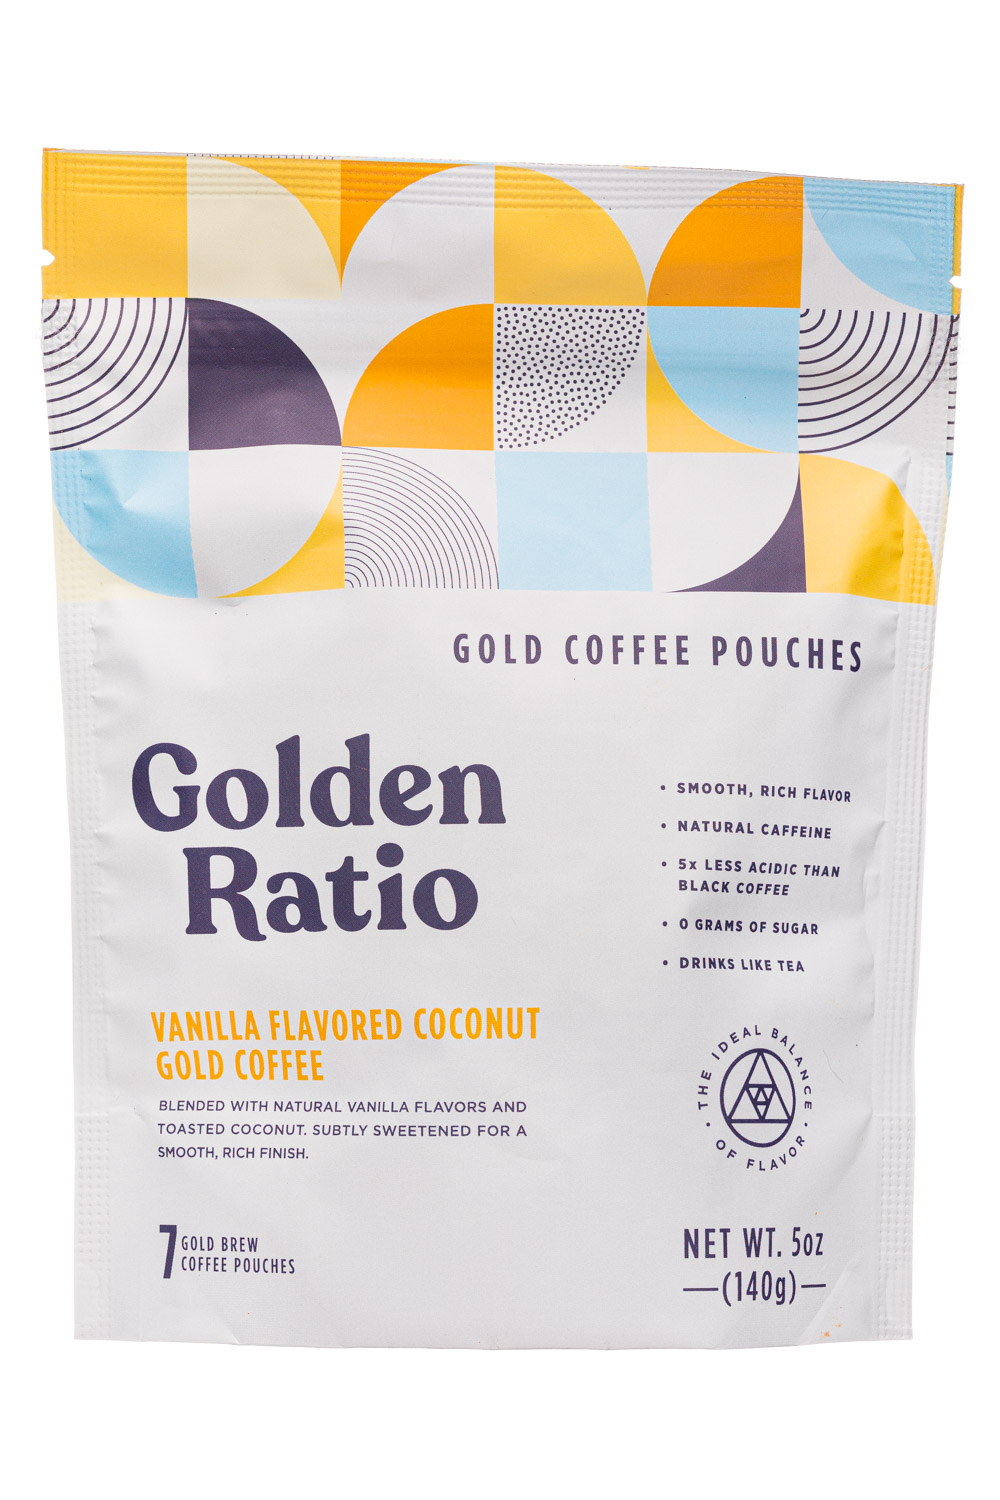 Vanilla Flavored Coconut Gold Coffee